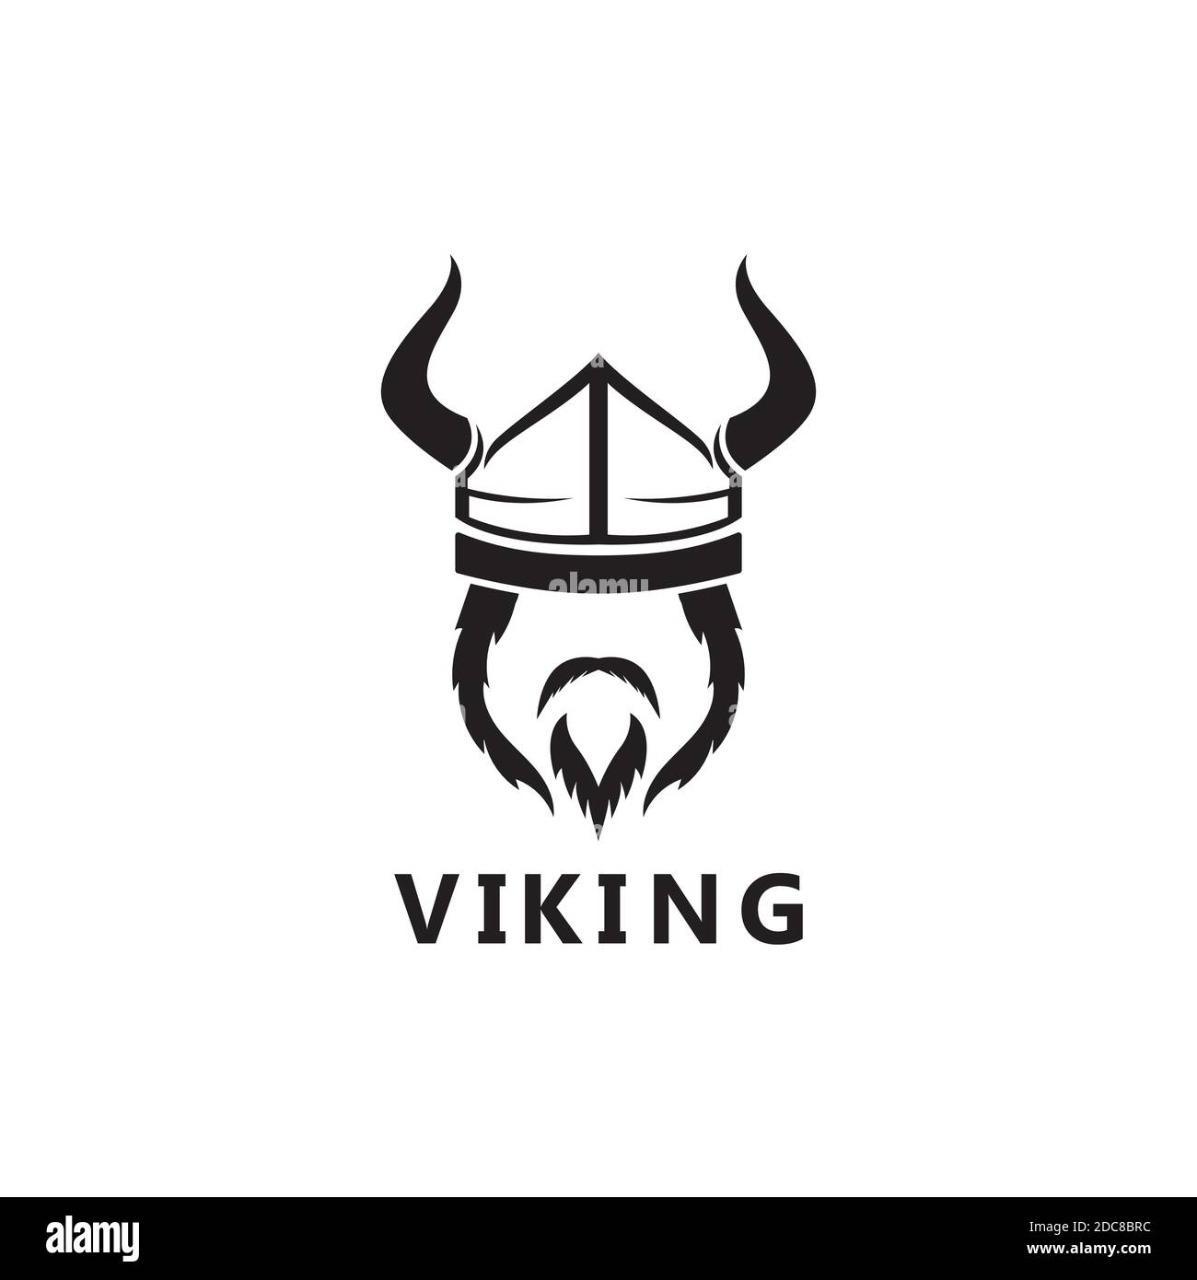 Vikingo95?s=8m3ko+yn45a1lvdz5+zqqqfia1bvz7mredbgdxvbaau=